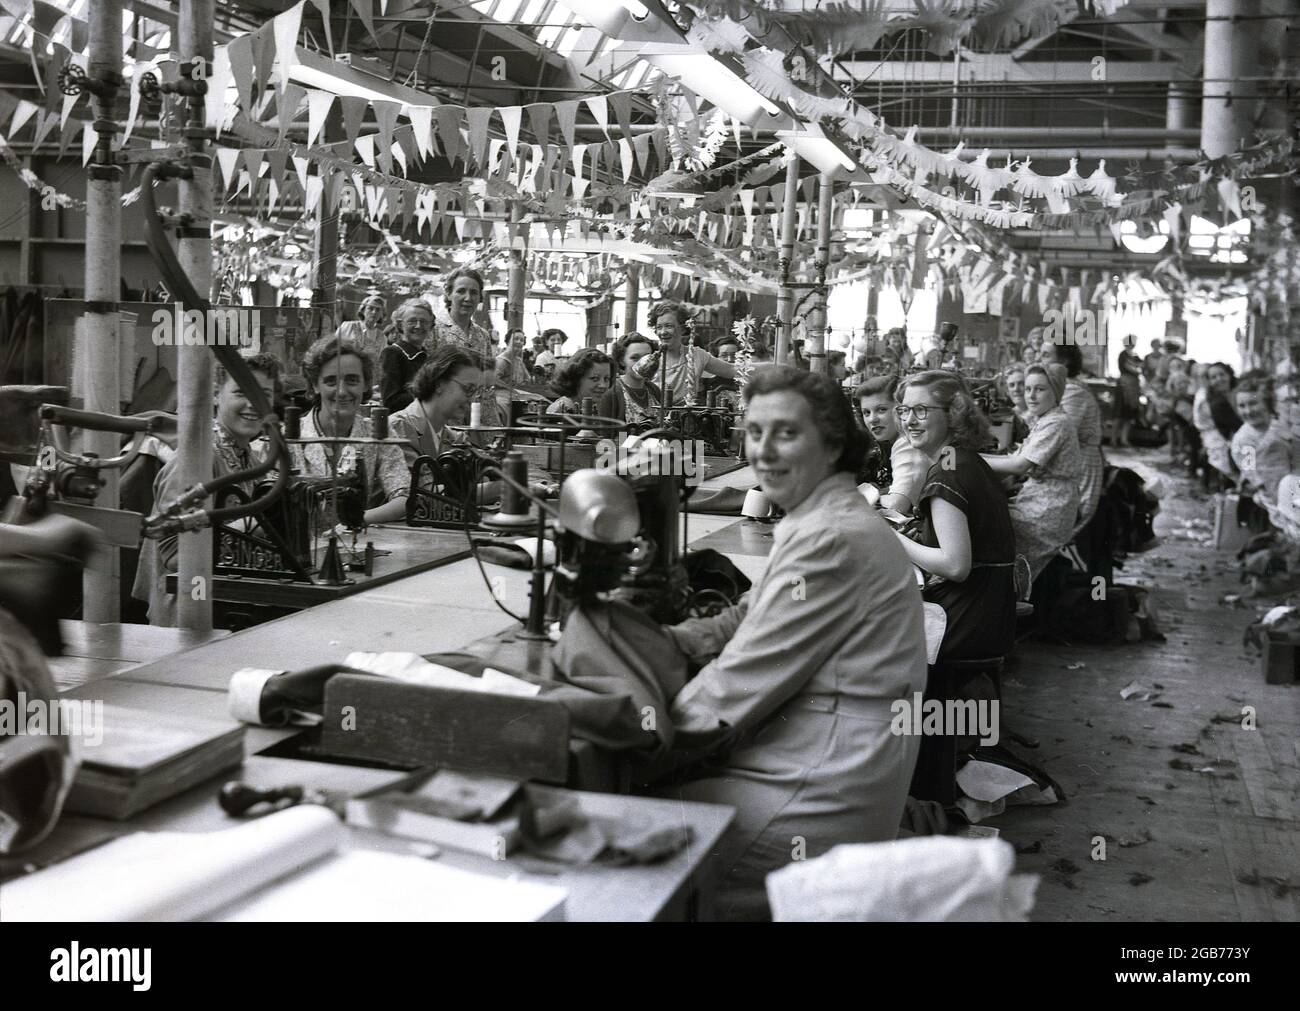 1953, historisch, Arbeiterinnen, Streams, in der Fabrik des berühmten Bekleidungsherstellers Hepworths, sitzend für ein Bild, einige tragen kleine Partyhüte und mit einer Verhängung zur Krönung der Königin, die vom Dach des Providence Works auf der Claypit Lane, Leeds, England, Großbritannien, hängt. Hepworth’s wurde von Joseph Hepworth gegründet, dem Sohn eines ‘„Tuchkleiders“ aus Lindley in der Nähe von Huddersfield, der noch als Schuljunge in die Fußstapfen seines Vaters trat und in Teilzeit in einer lokalen Fabrik zu Wollkleidern wurde. 1914 war Joseph Hepworth & Son wahrscheinlich der größte Bekleidungsmann Stockfoto